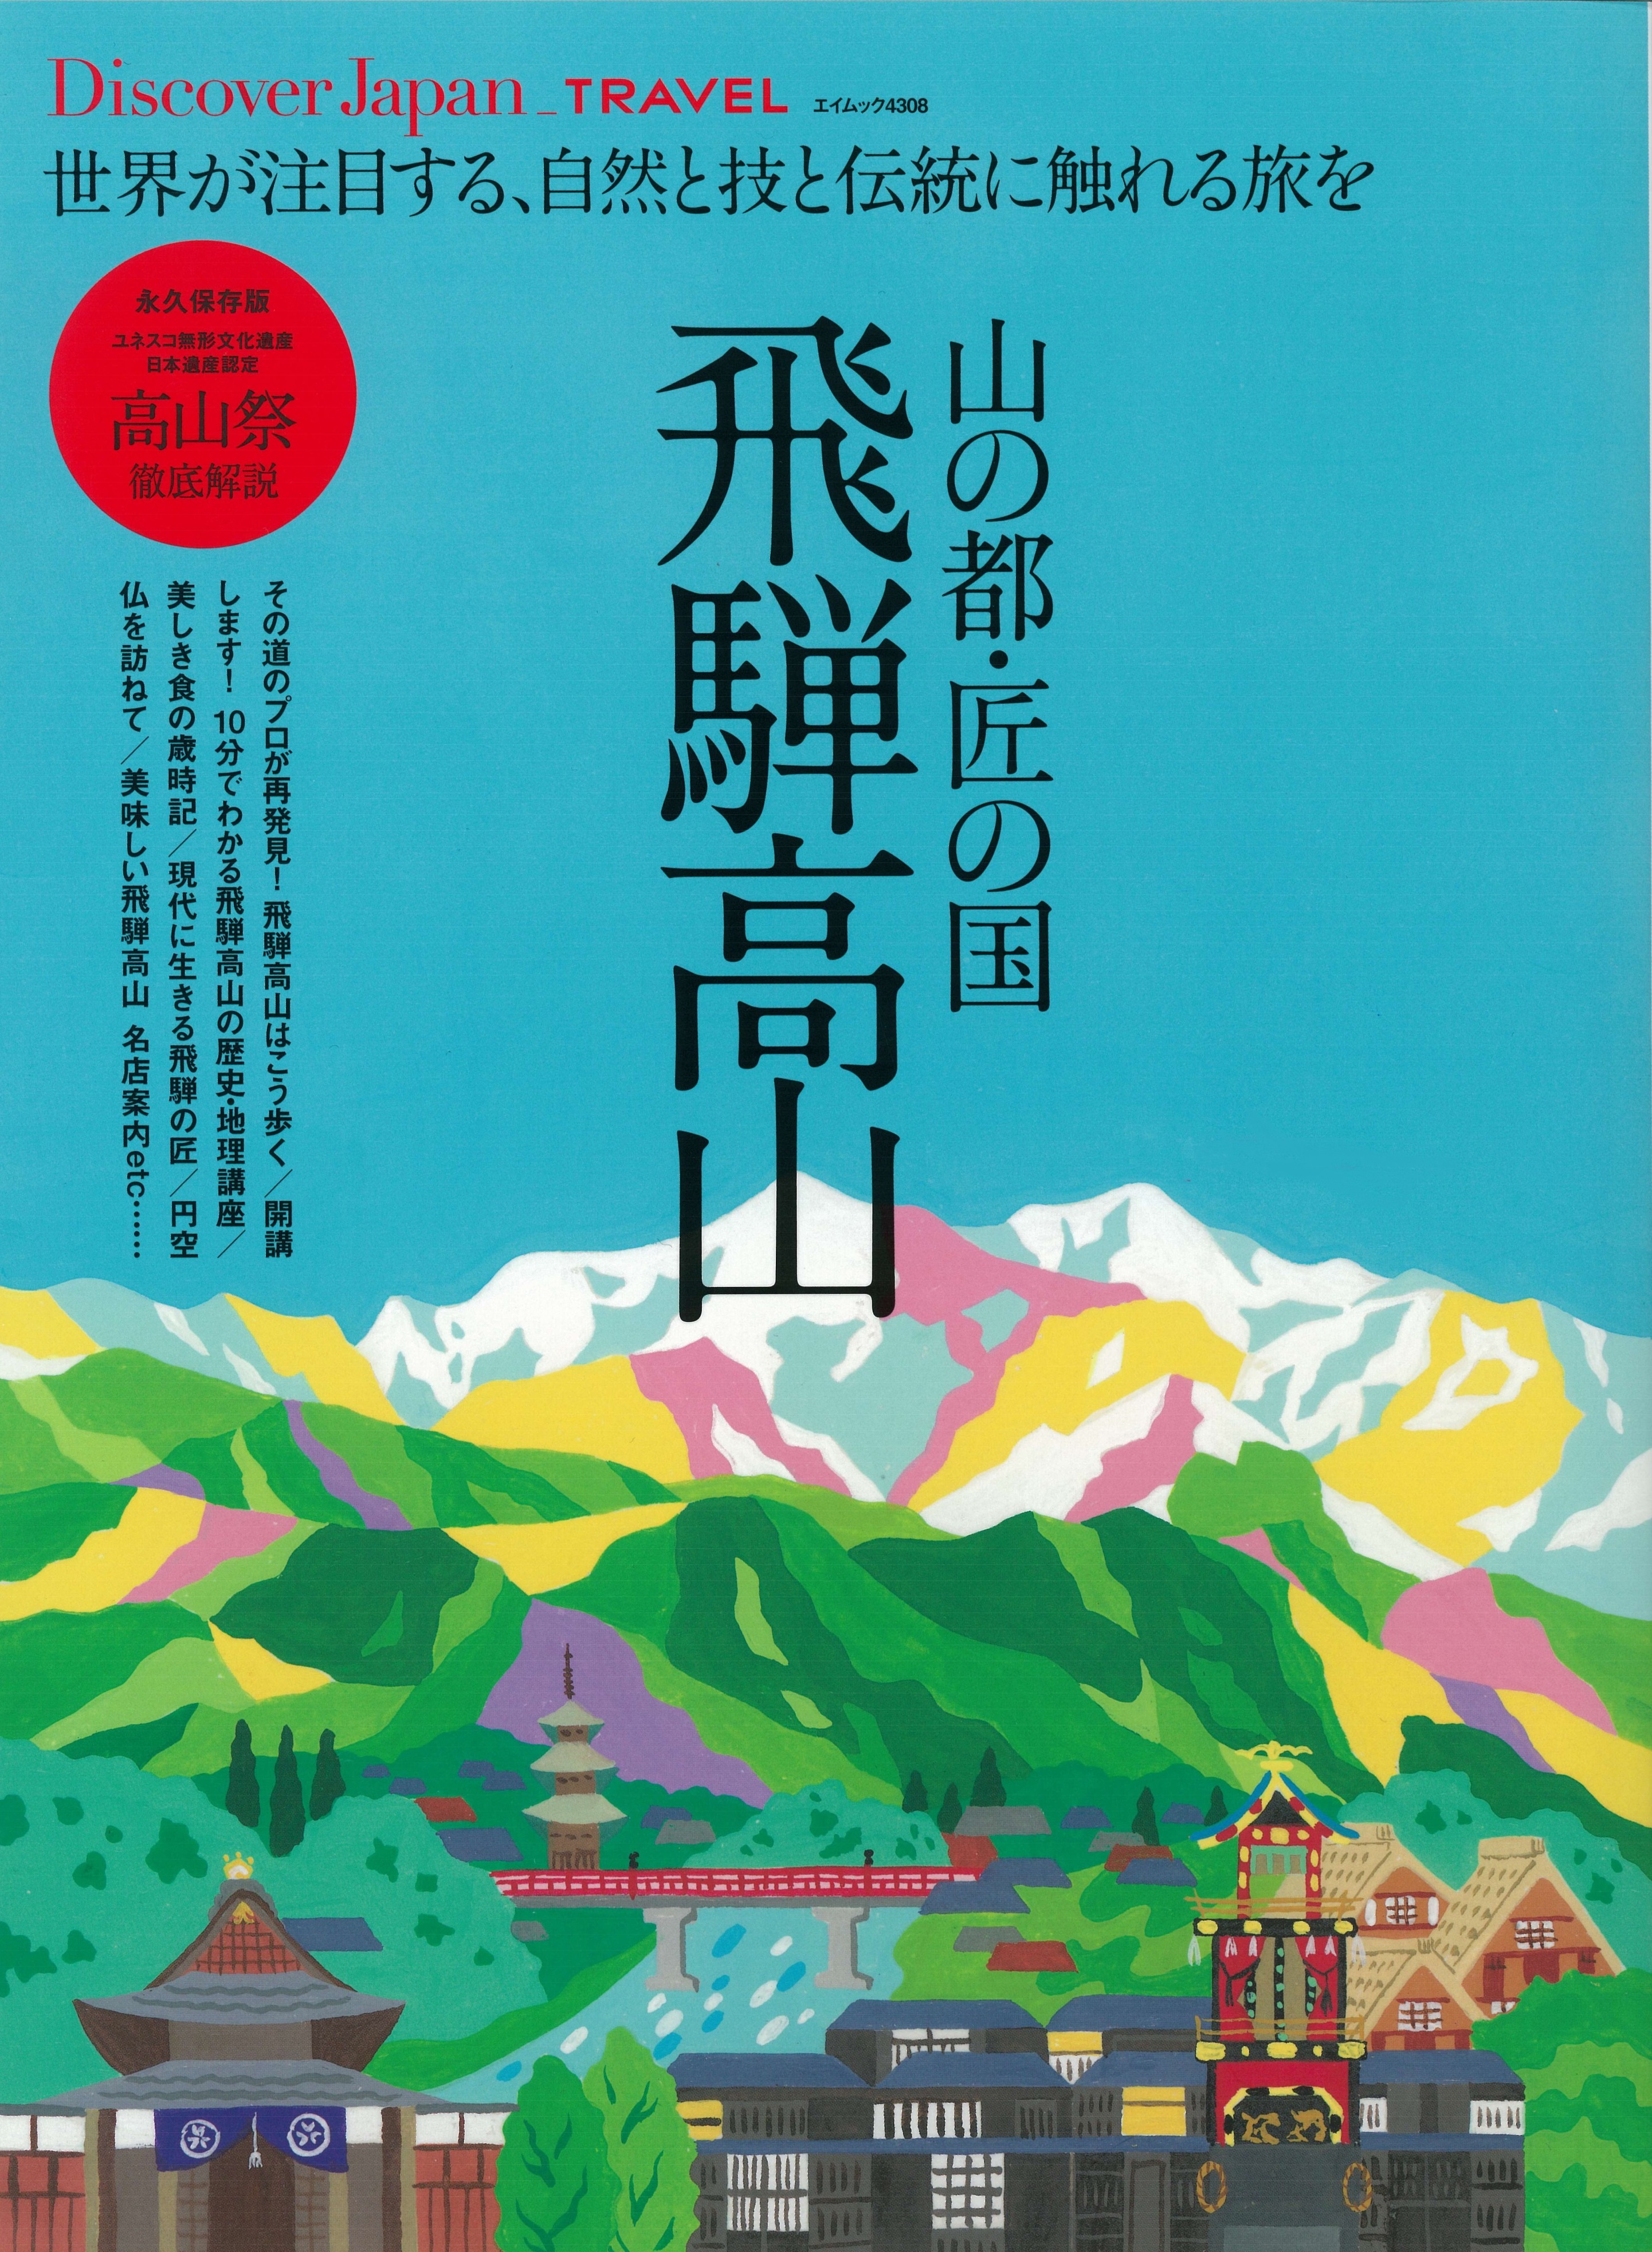 インバウンドでも注目の岐阜県 飛騨高山 の魅力を閉じ込めたトラベル本が3月19日に発売 株式会社ディスカバー ジャパンのプレスリリース